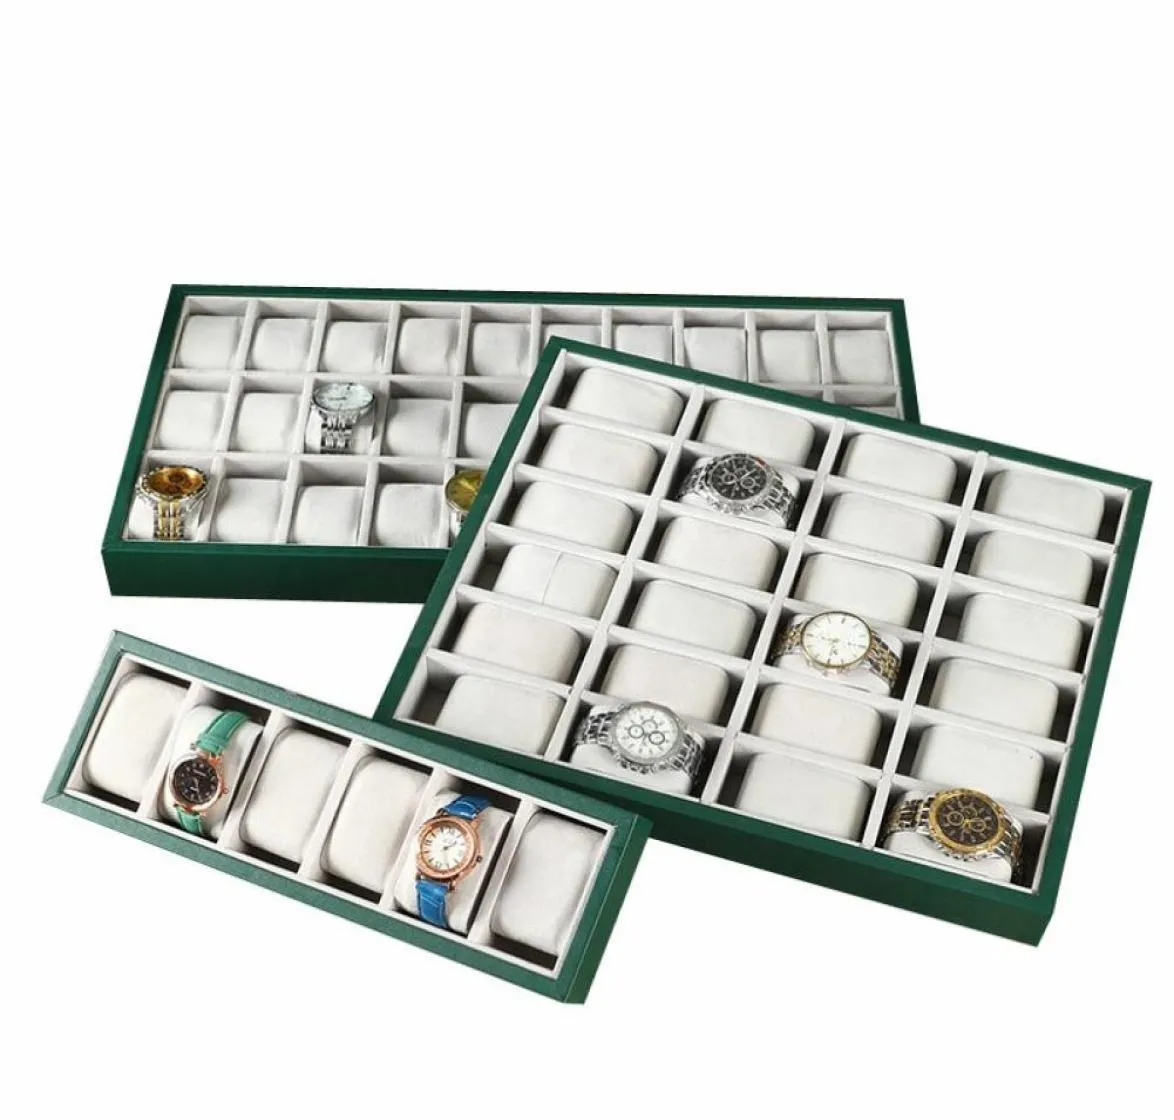 Nouveau plateau d'affichage de montre en cuir Pu Green 6122430 Grille Affichage Affichage des accessoires de rangement de montre étagère d'affichage 4436028